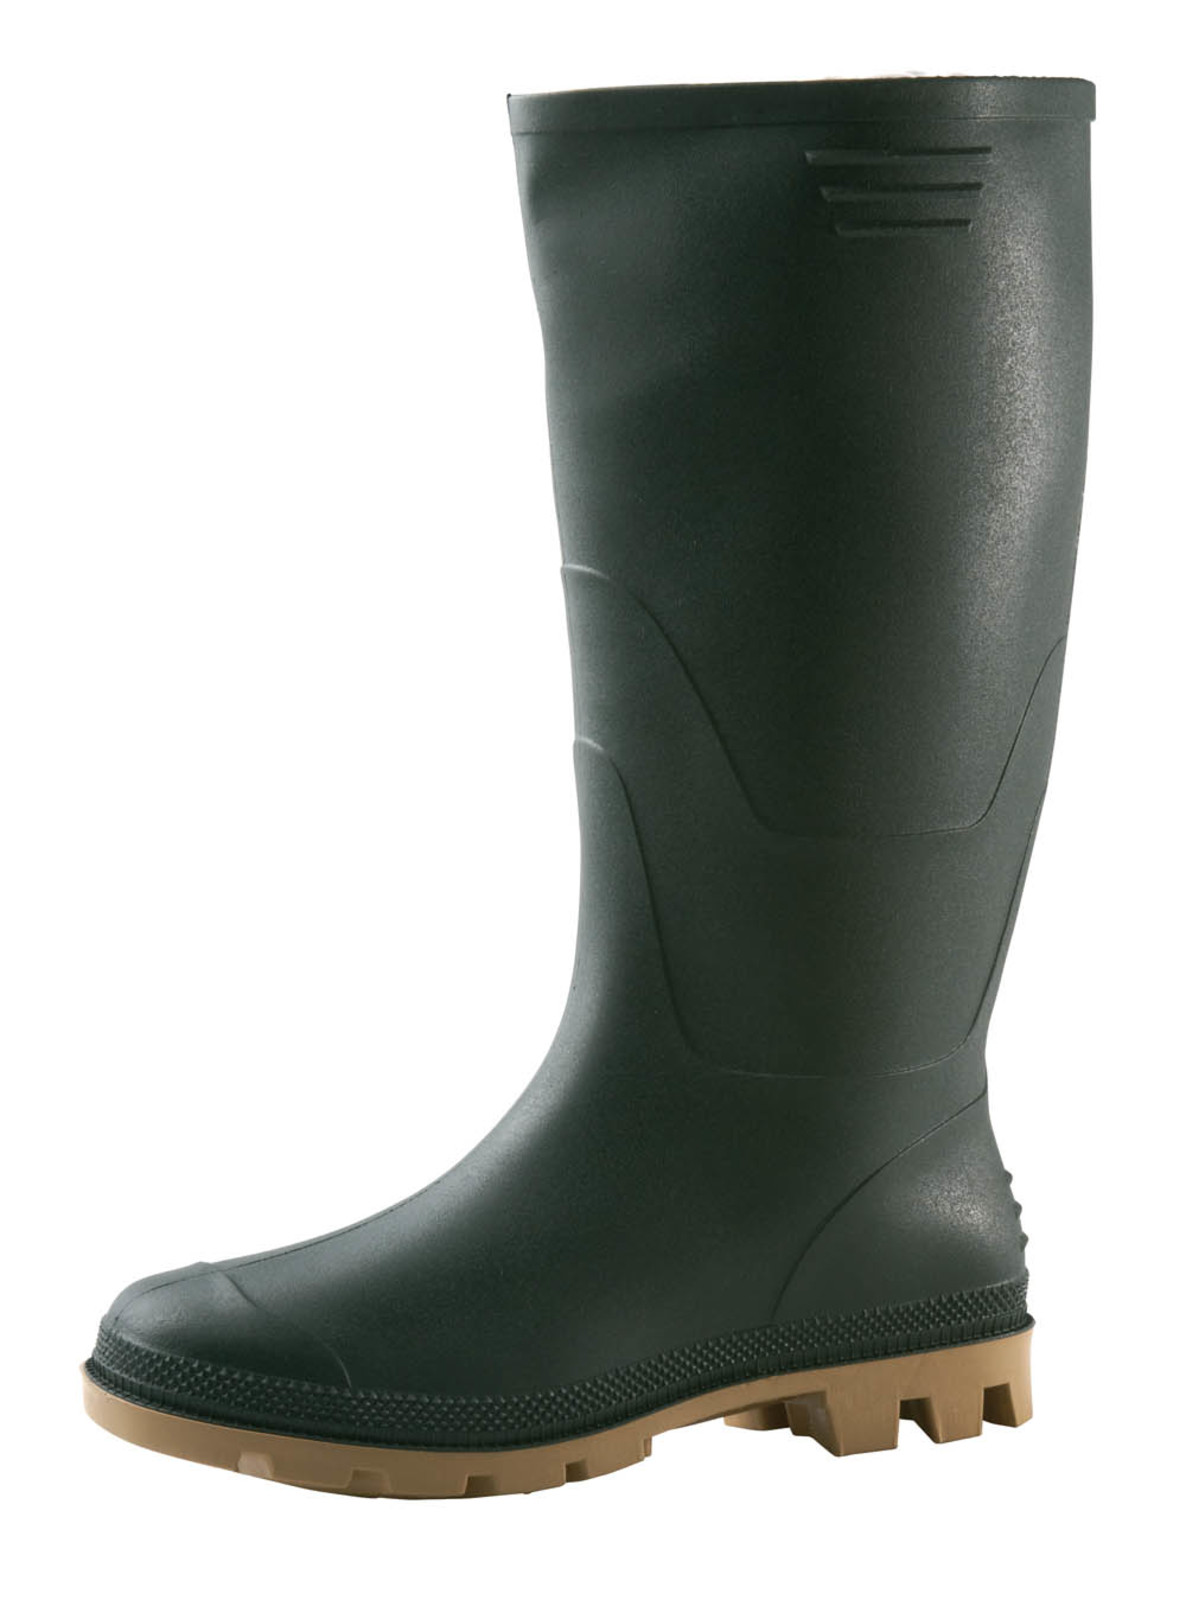 Gumáky Boots Ginocchio PVC - veľkosť: 40, farba: zelená